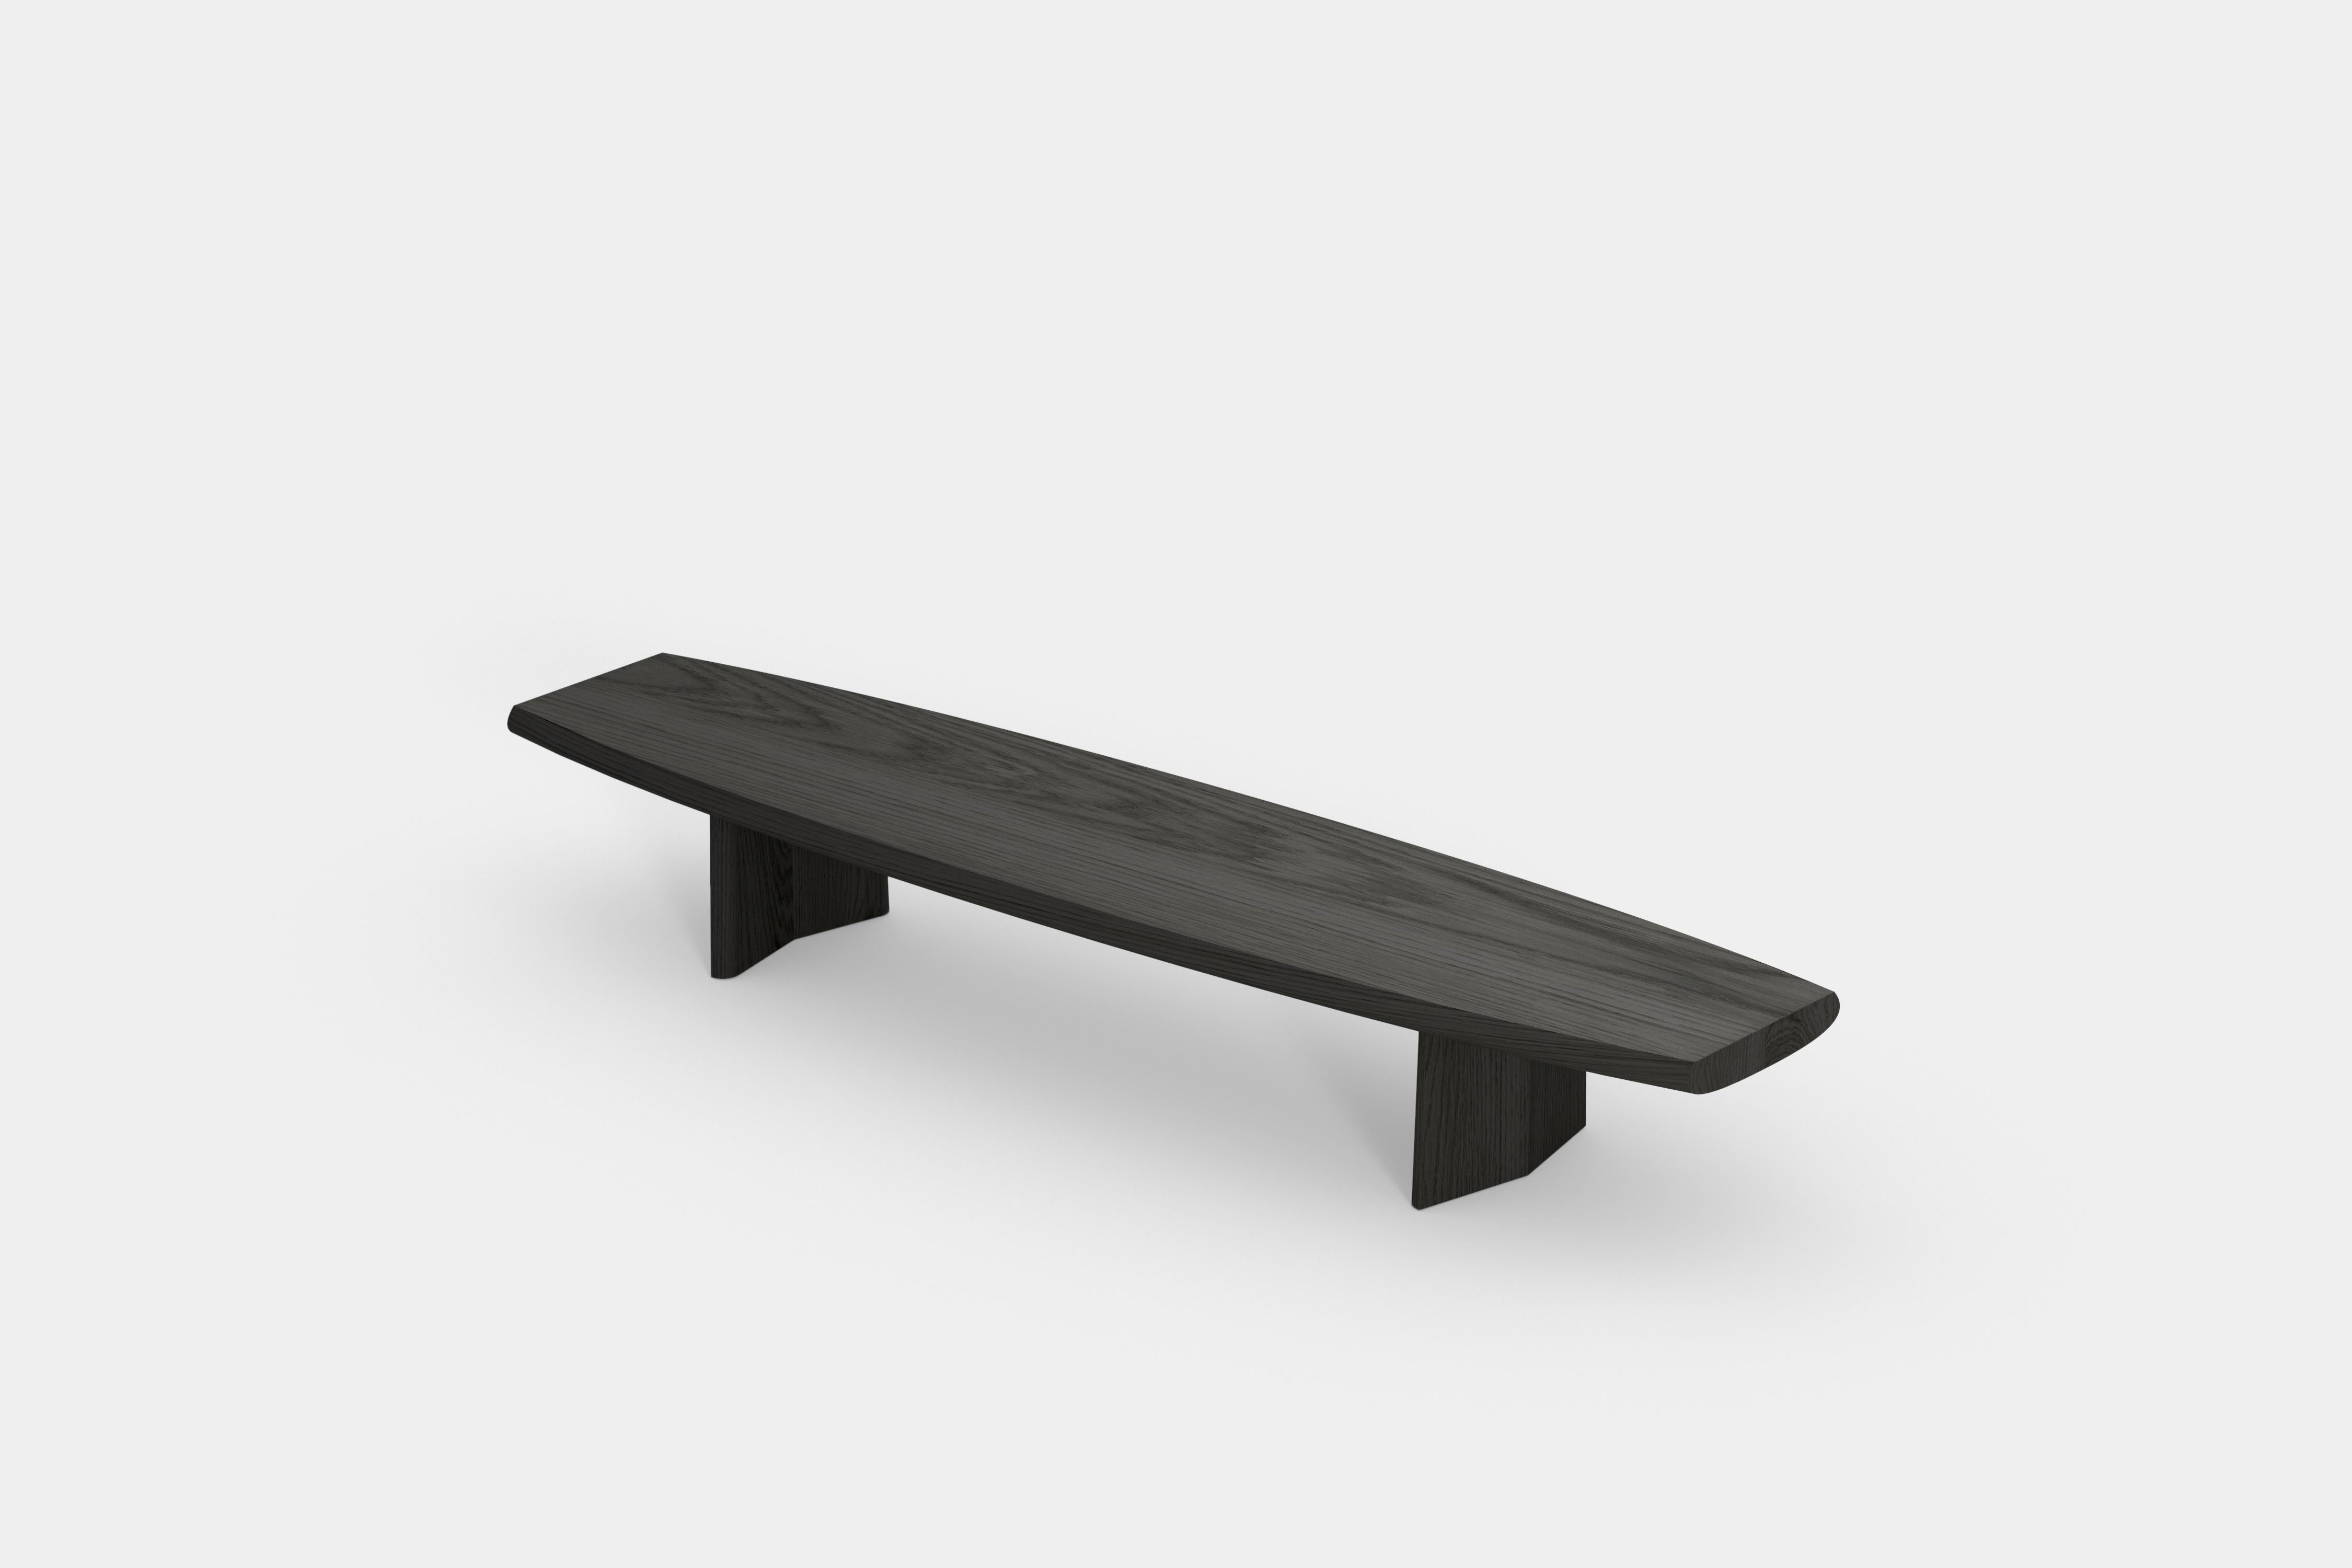 Peana Niedriger Couchtisch, Bank aus schwarz getöntem Holz von Joel Escalona

Peana, was im Englischen so viel wie Sockel bedeutet, ist eine Serie von Tischen und verschiedenen Oberflächen, die von der Idee inspiriert sind, würdige Möbelstücke zu